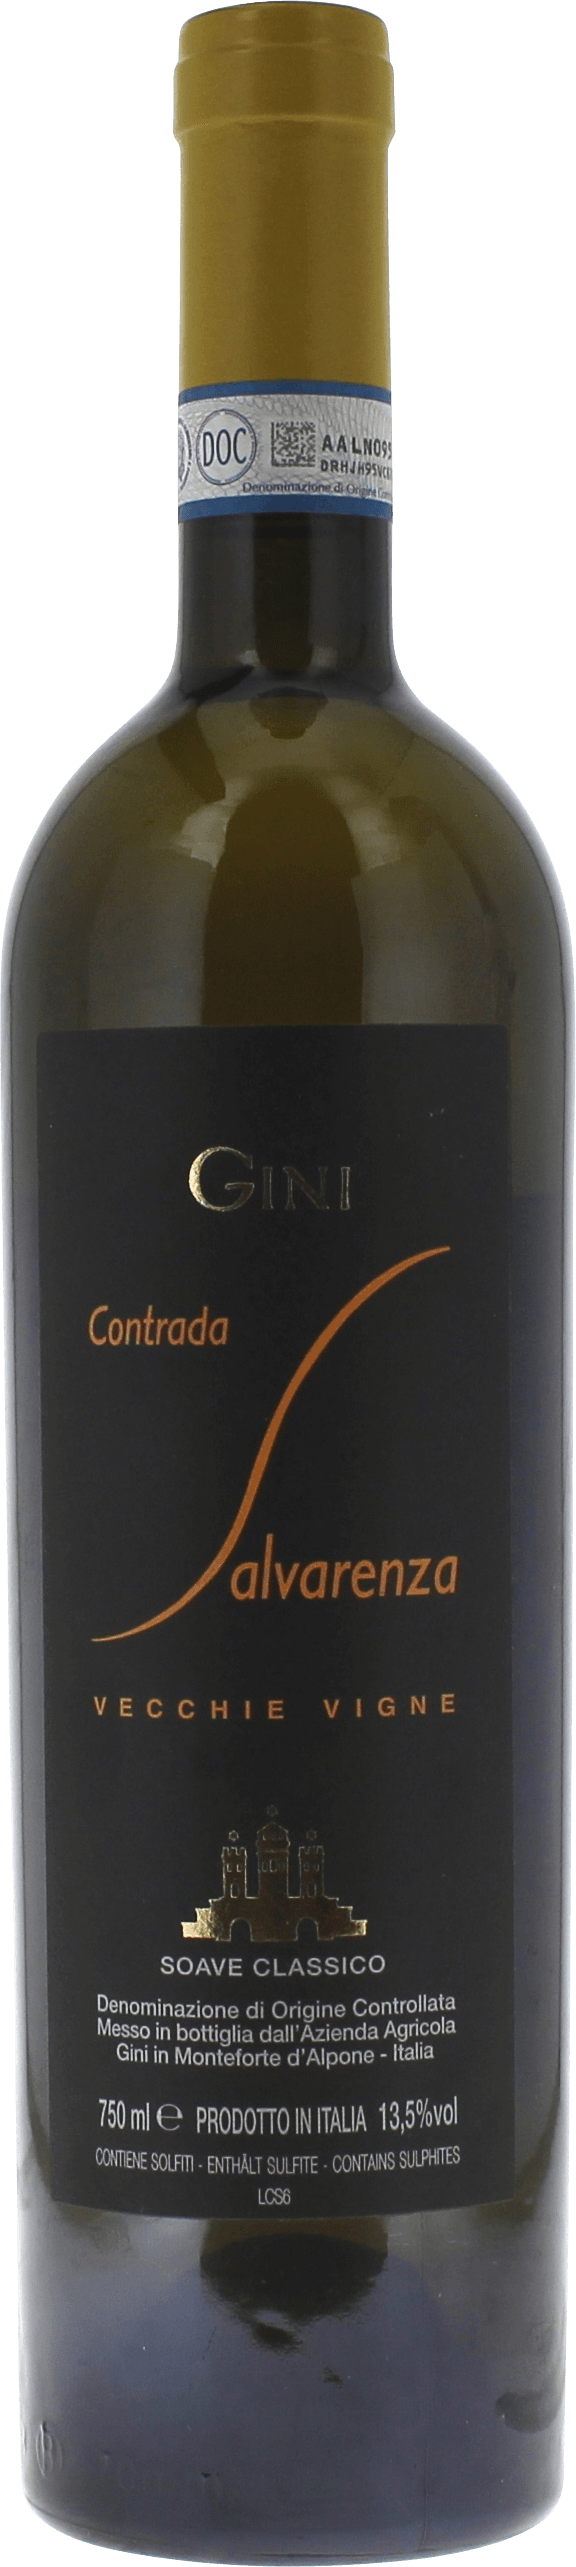 Gini - contrada salvarenza garganega - soave classico 2012  Italie, Vin italien